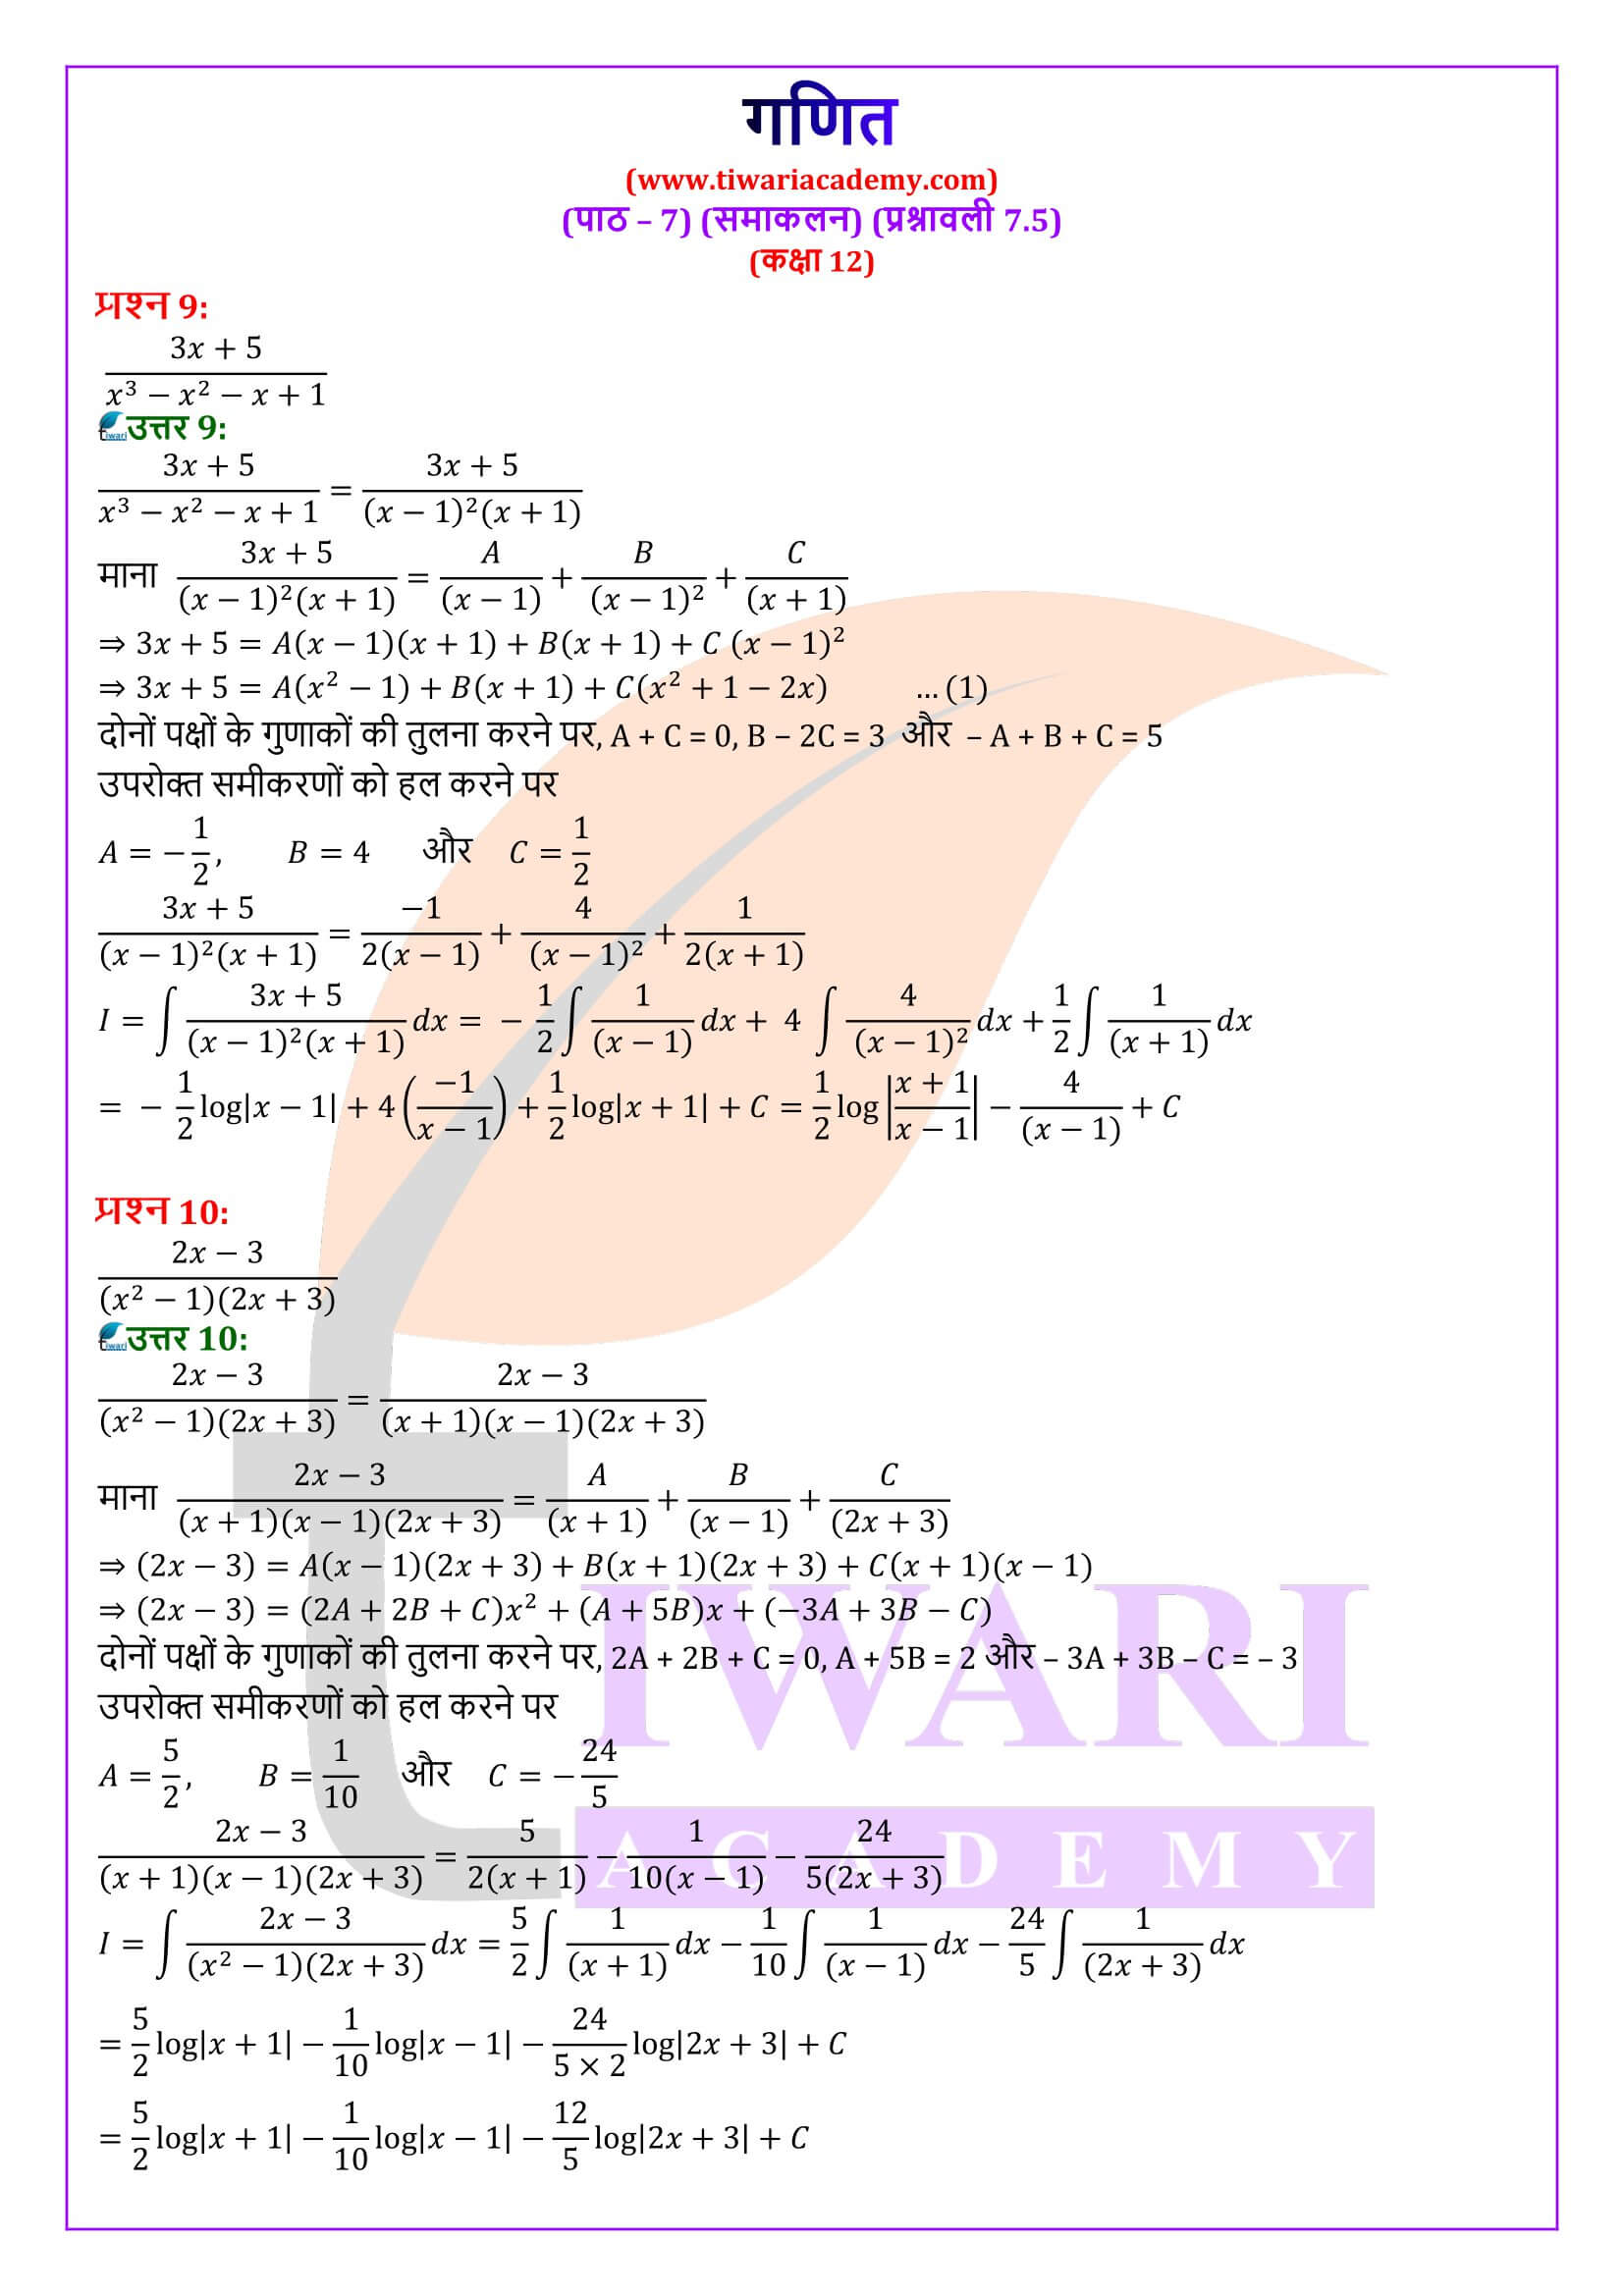 कक्षा 12 गणित अध्याय 7 प्रश्नावली 7.5 के हल हिंदी में